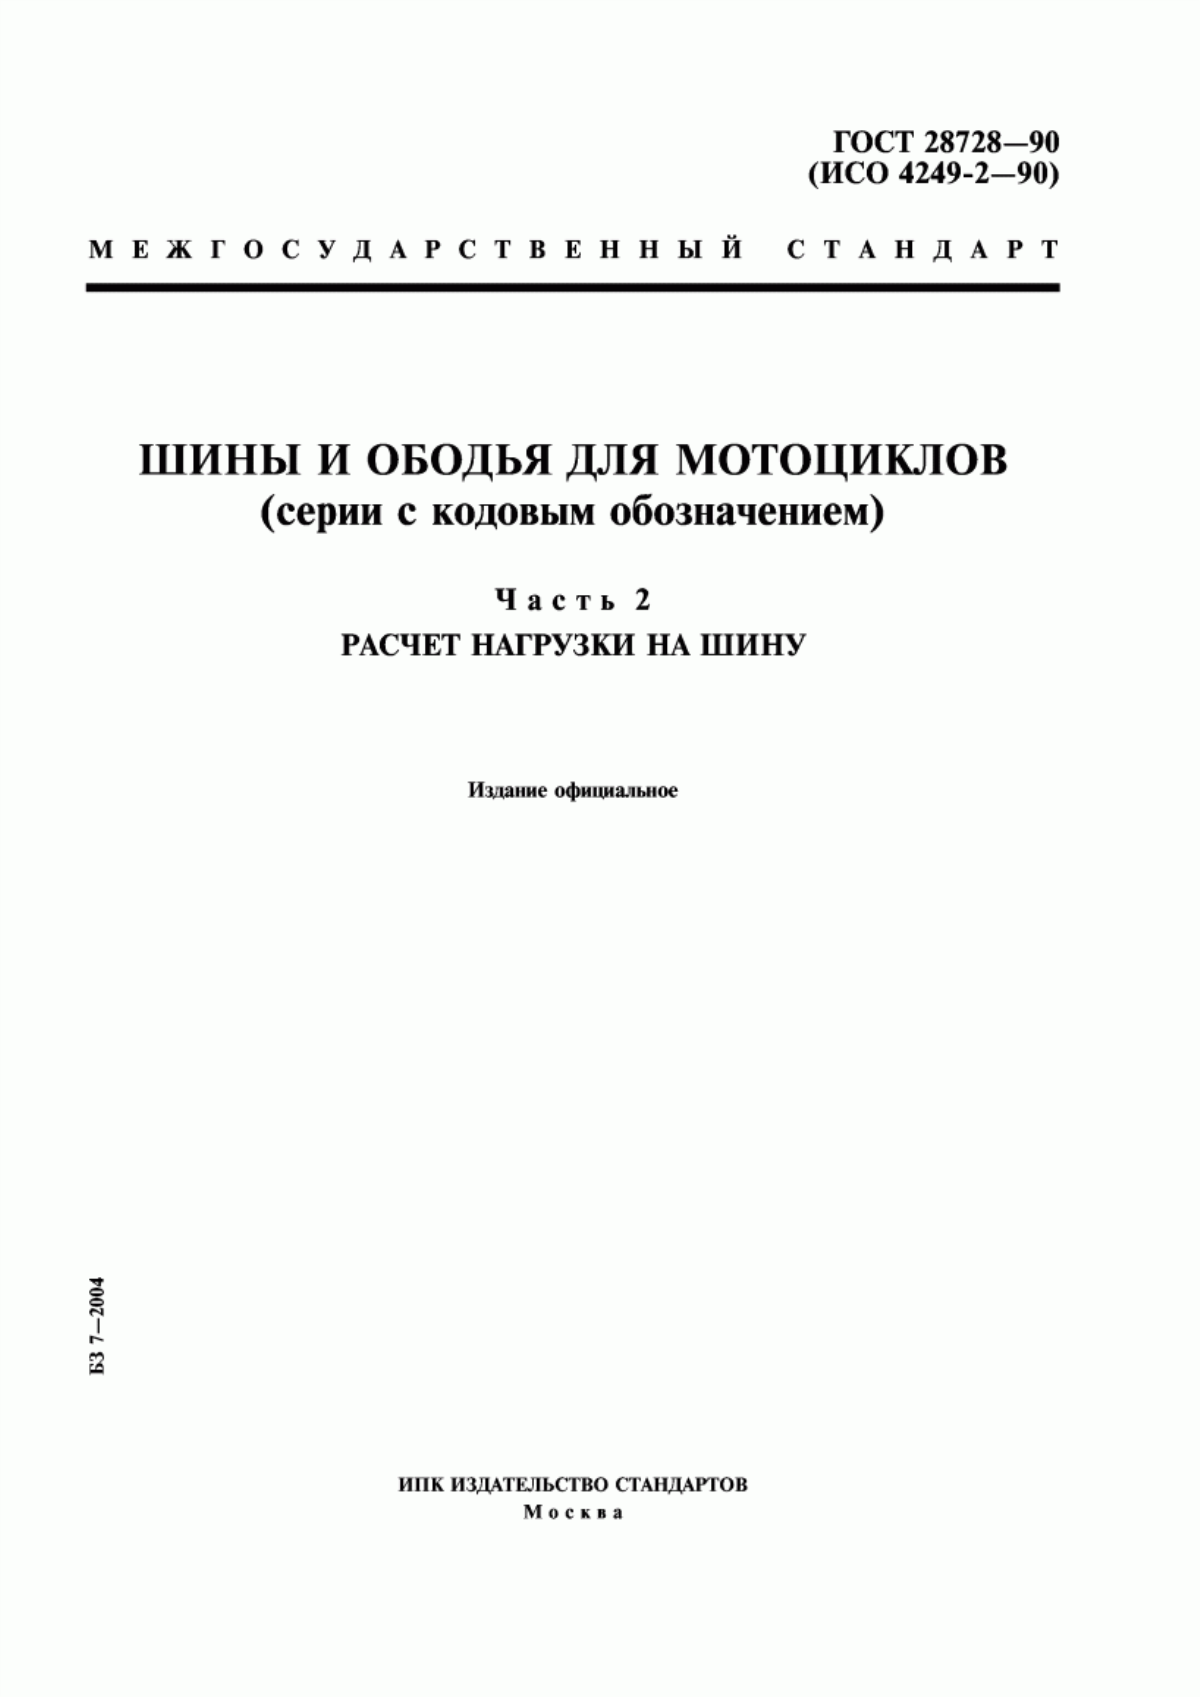 ГОСТ 28728-90 Шины и ободья для мотоциклов (серии с кодовым обозначением). Часть 2. Расчет нагрузки на шину